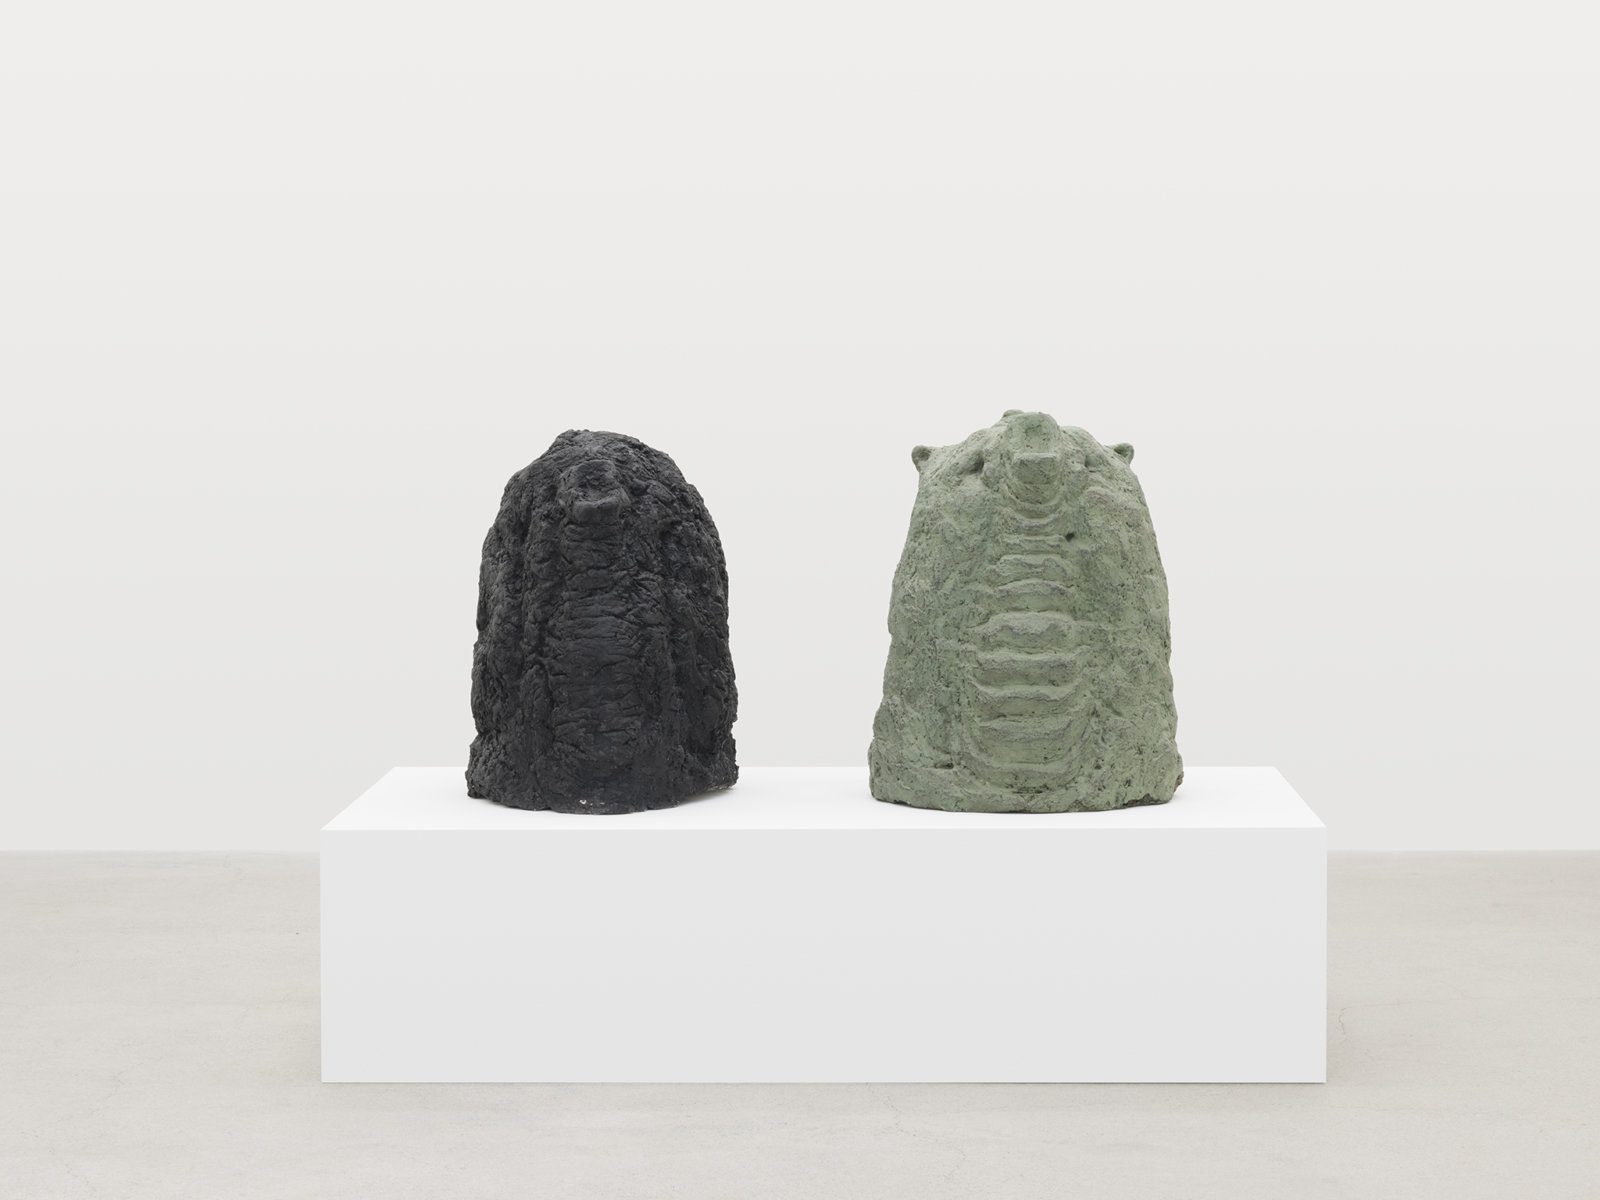 Valérie Blass, Éléphant en vert et noir, 2005, cement, plaster, leather, 46 x 71 x 41 in. (117 x 180 x 104 cm)